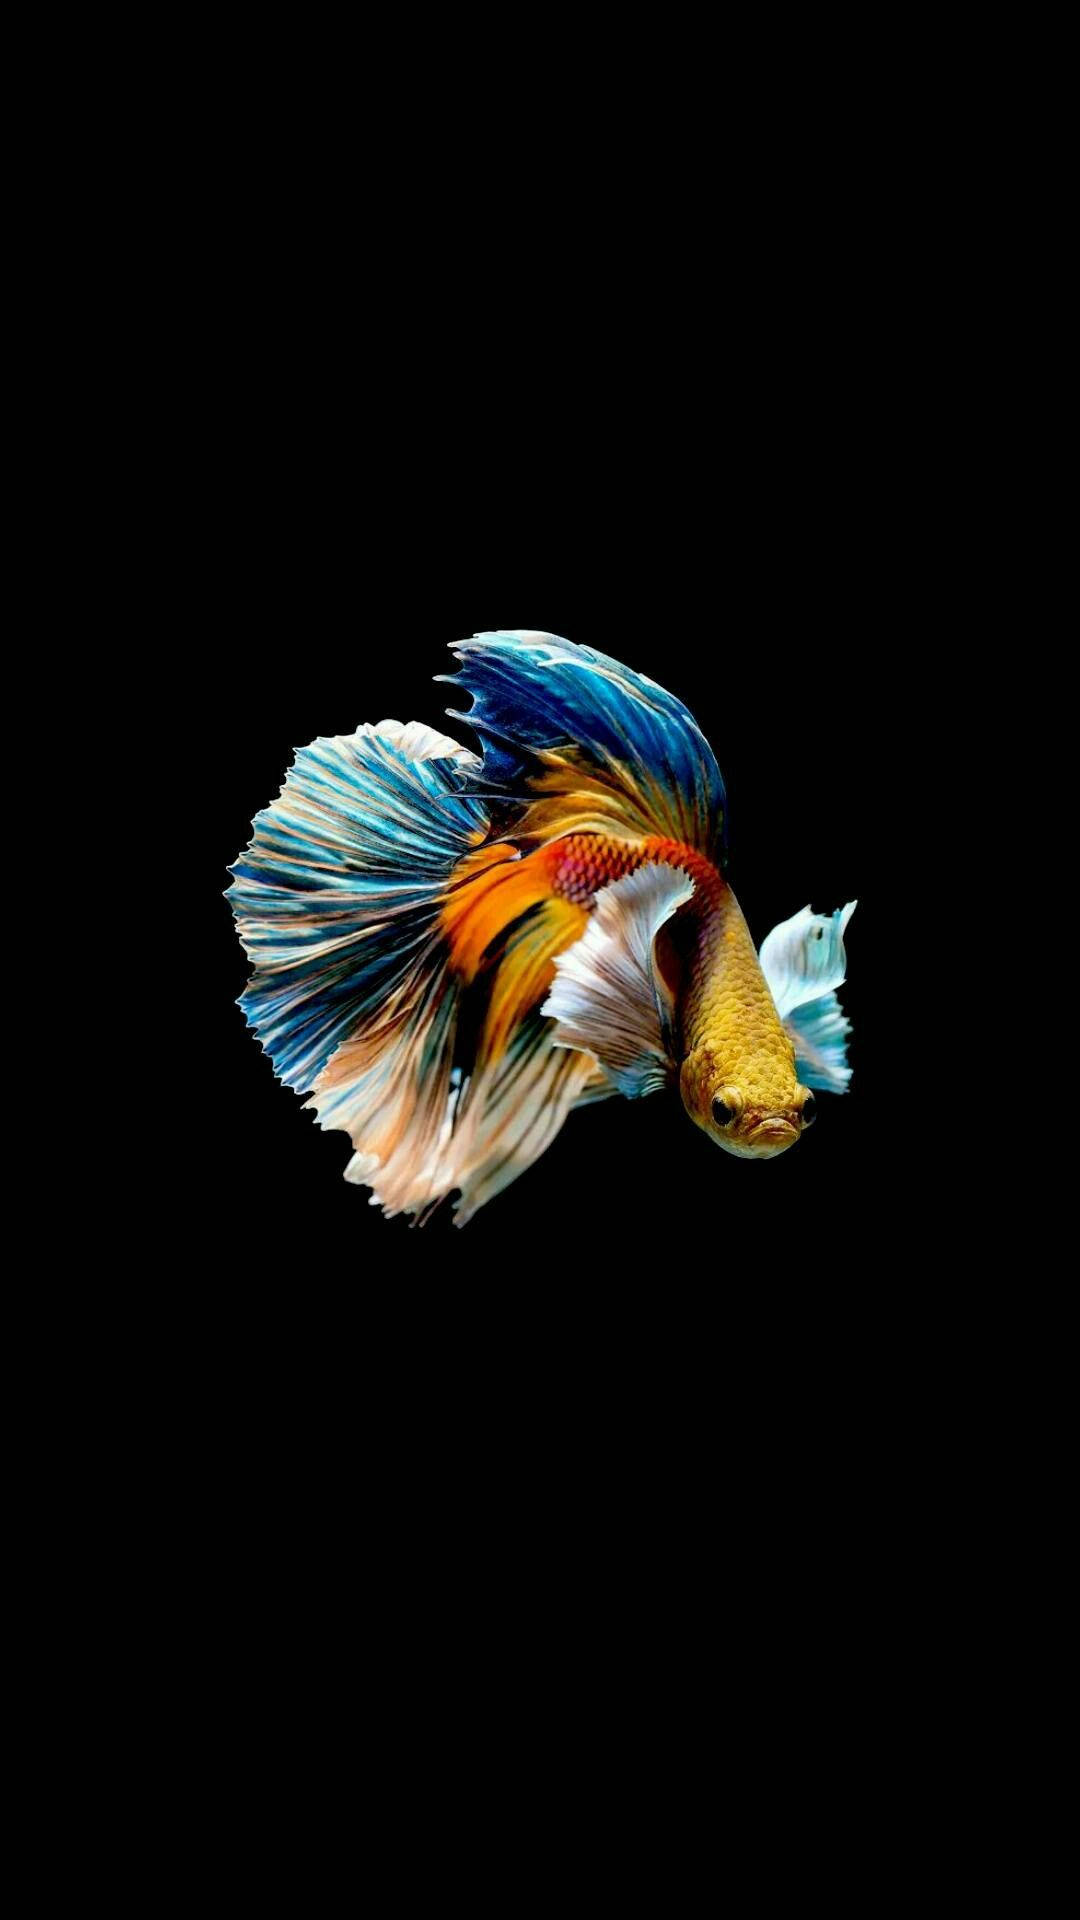 Với những gam màu sinh động và hình ảnh đẹp mắt, hình nền cá sẽ làm cho màn hình của bạn trở nên sống động hơn bao giờ hết!